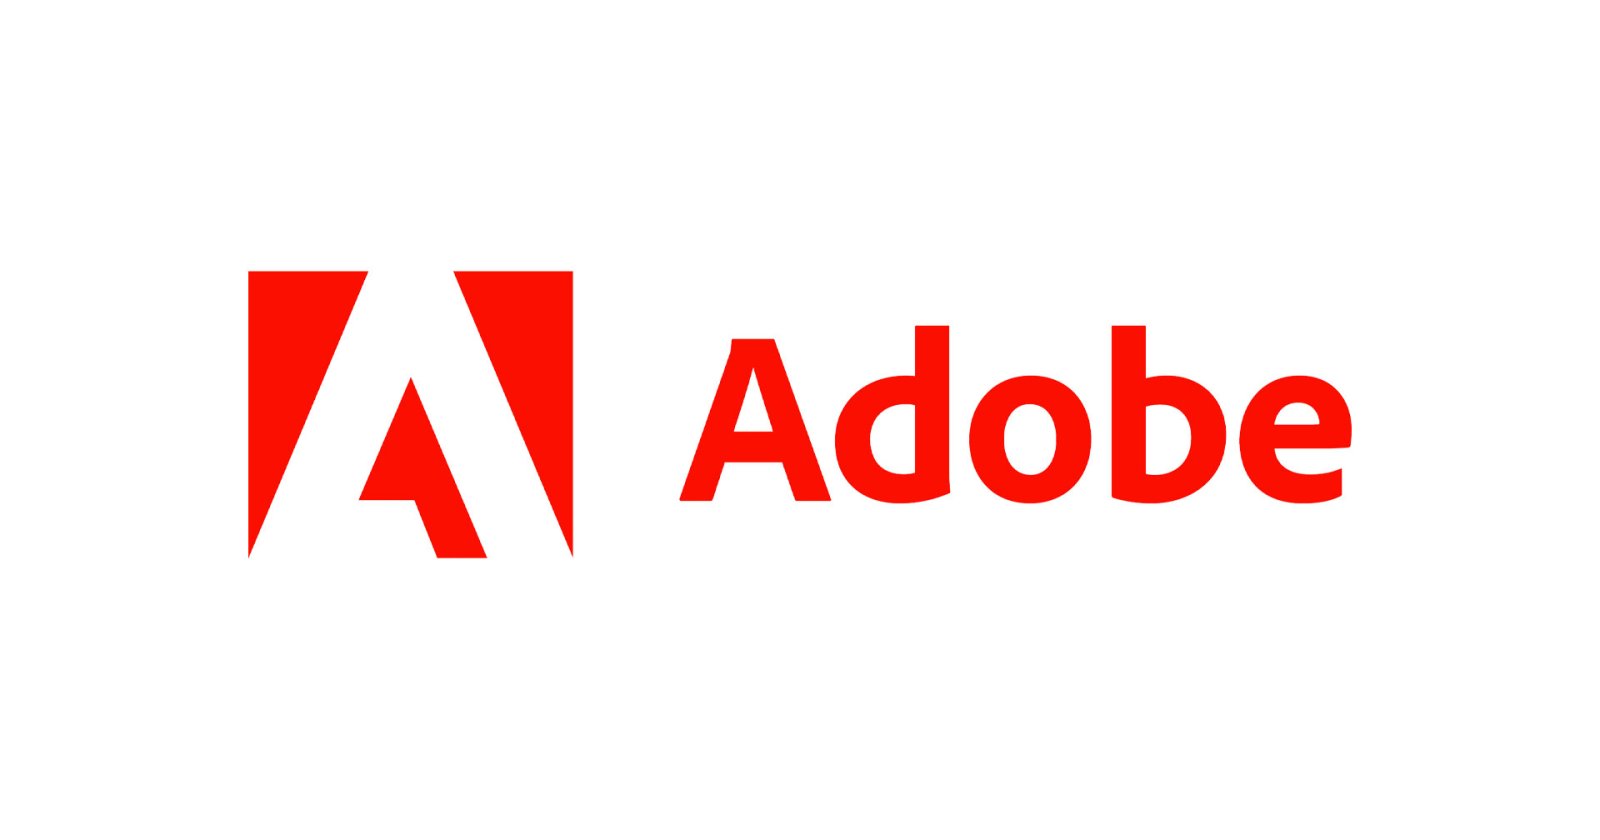 พนักงาน Adobe กังวล! เทคโนโลยี AI ของพวกเขาอาจเป็นตัวทำลายอาชีพของกลุ่มลูกค้าตัวเอง